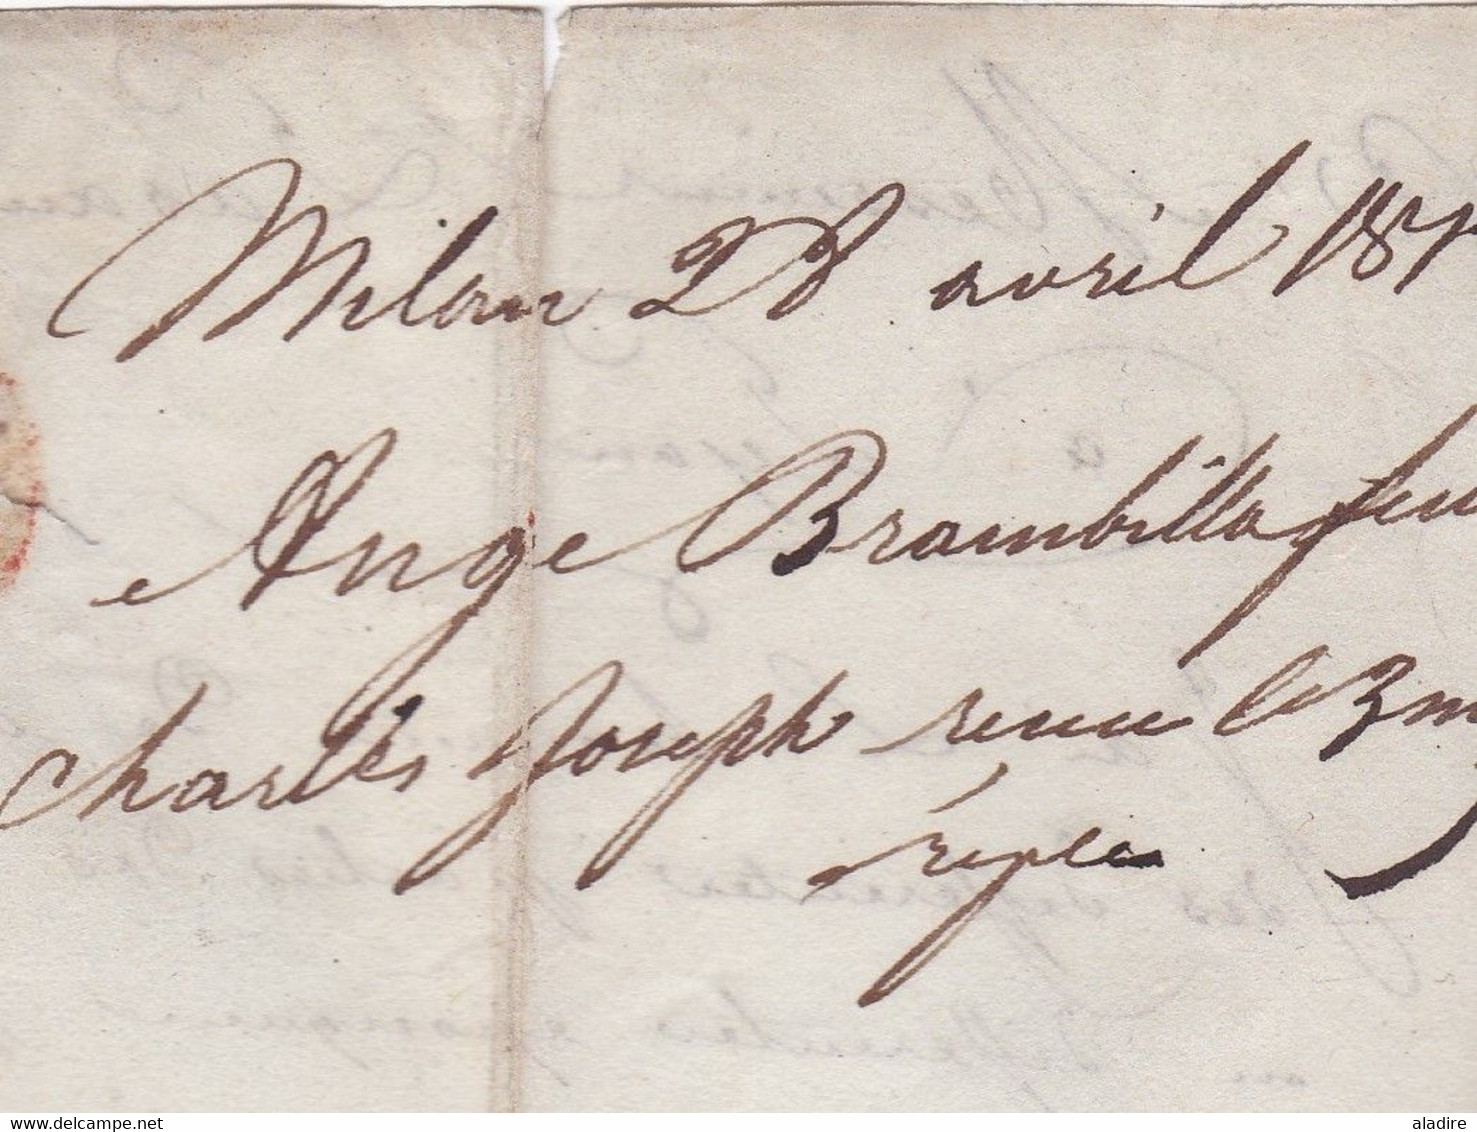 1813 -  BF MILAN Bureau Français sur Lettre pliée avec correspondance vers Lyon, Rhône, France